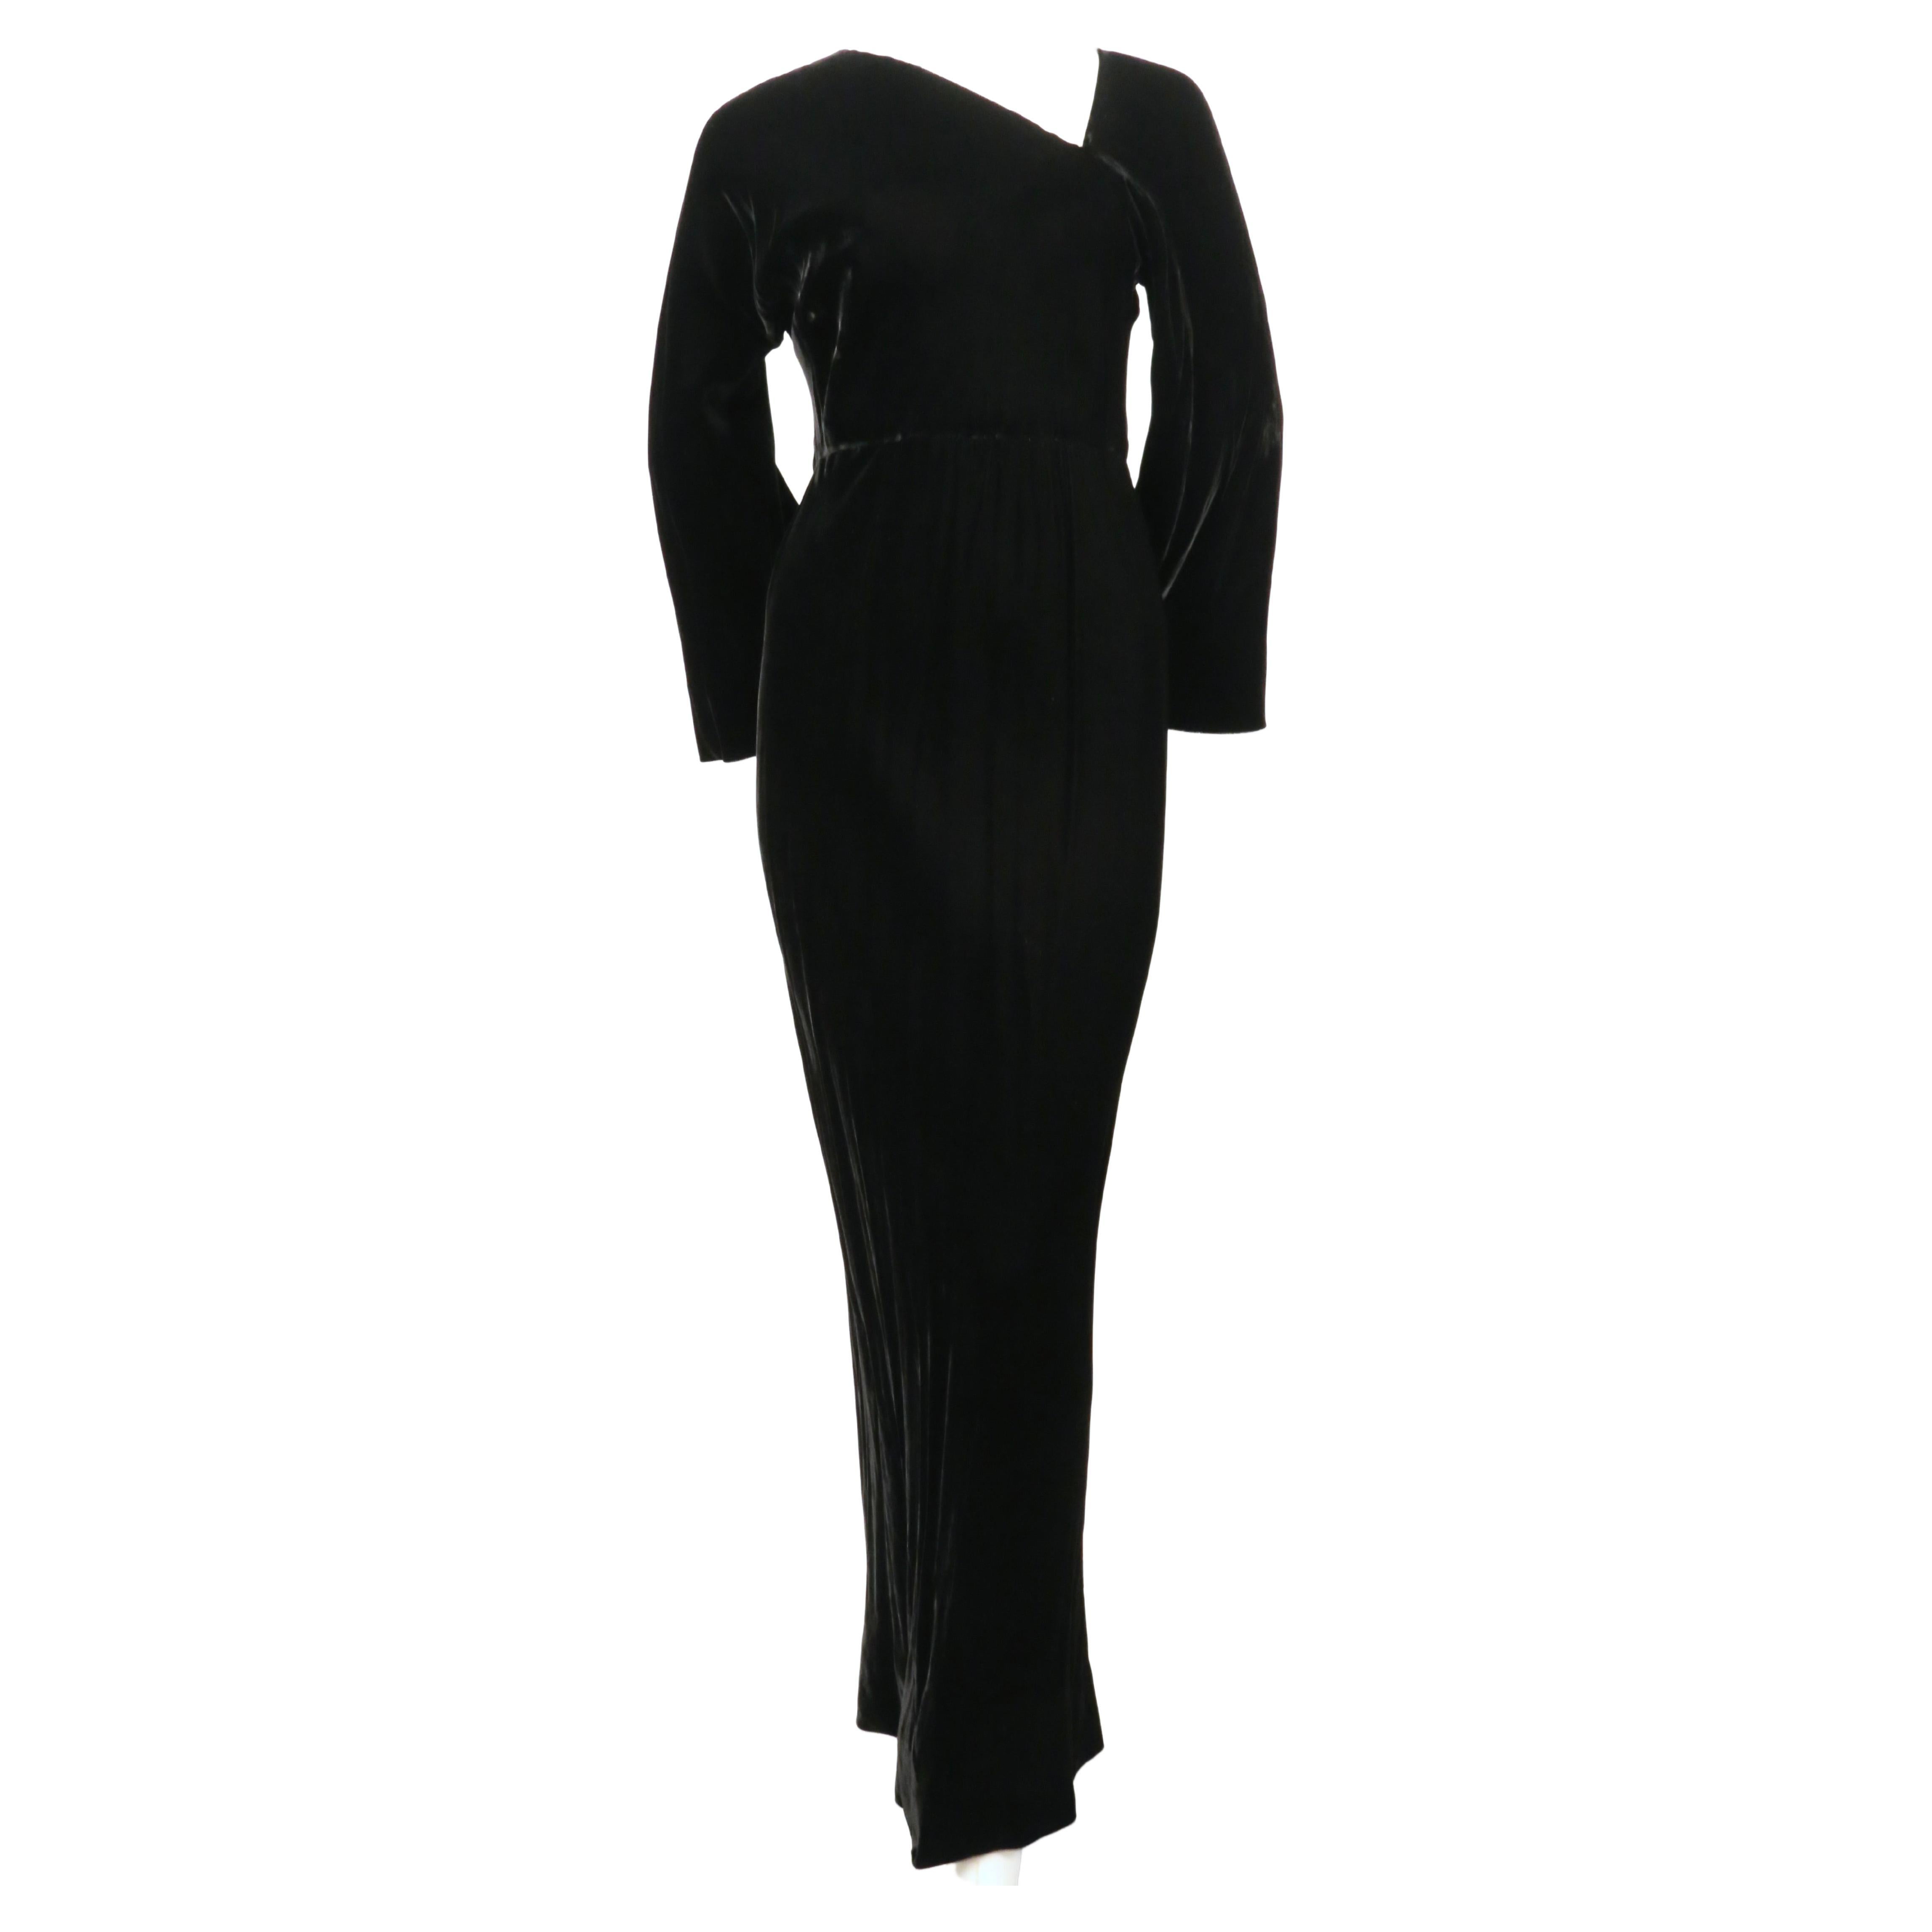 Très rare robe en velours noir de jais, coupée en biais, conçue par Roy Halston Frowick et datant des années 1970. Labellisée taille 4. La robe convient de préférence à une taille 2 à 6. Mesures approximatives (sans étirement) : buste 32